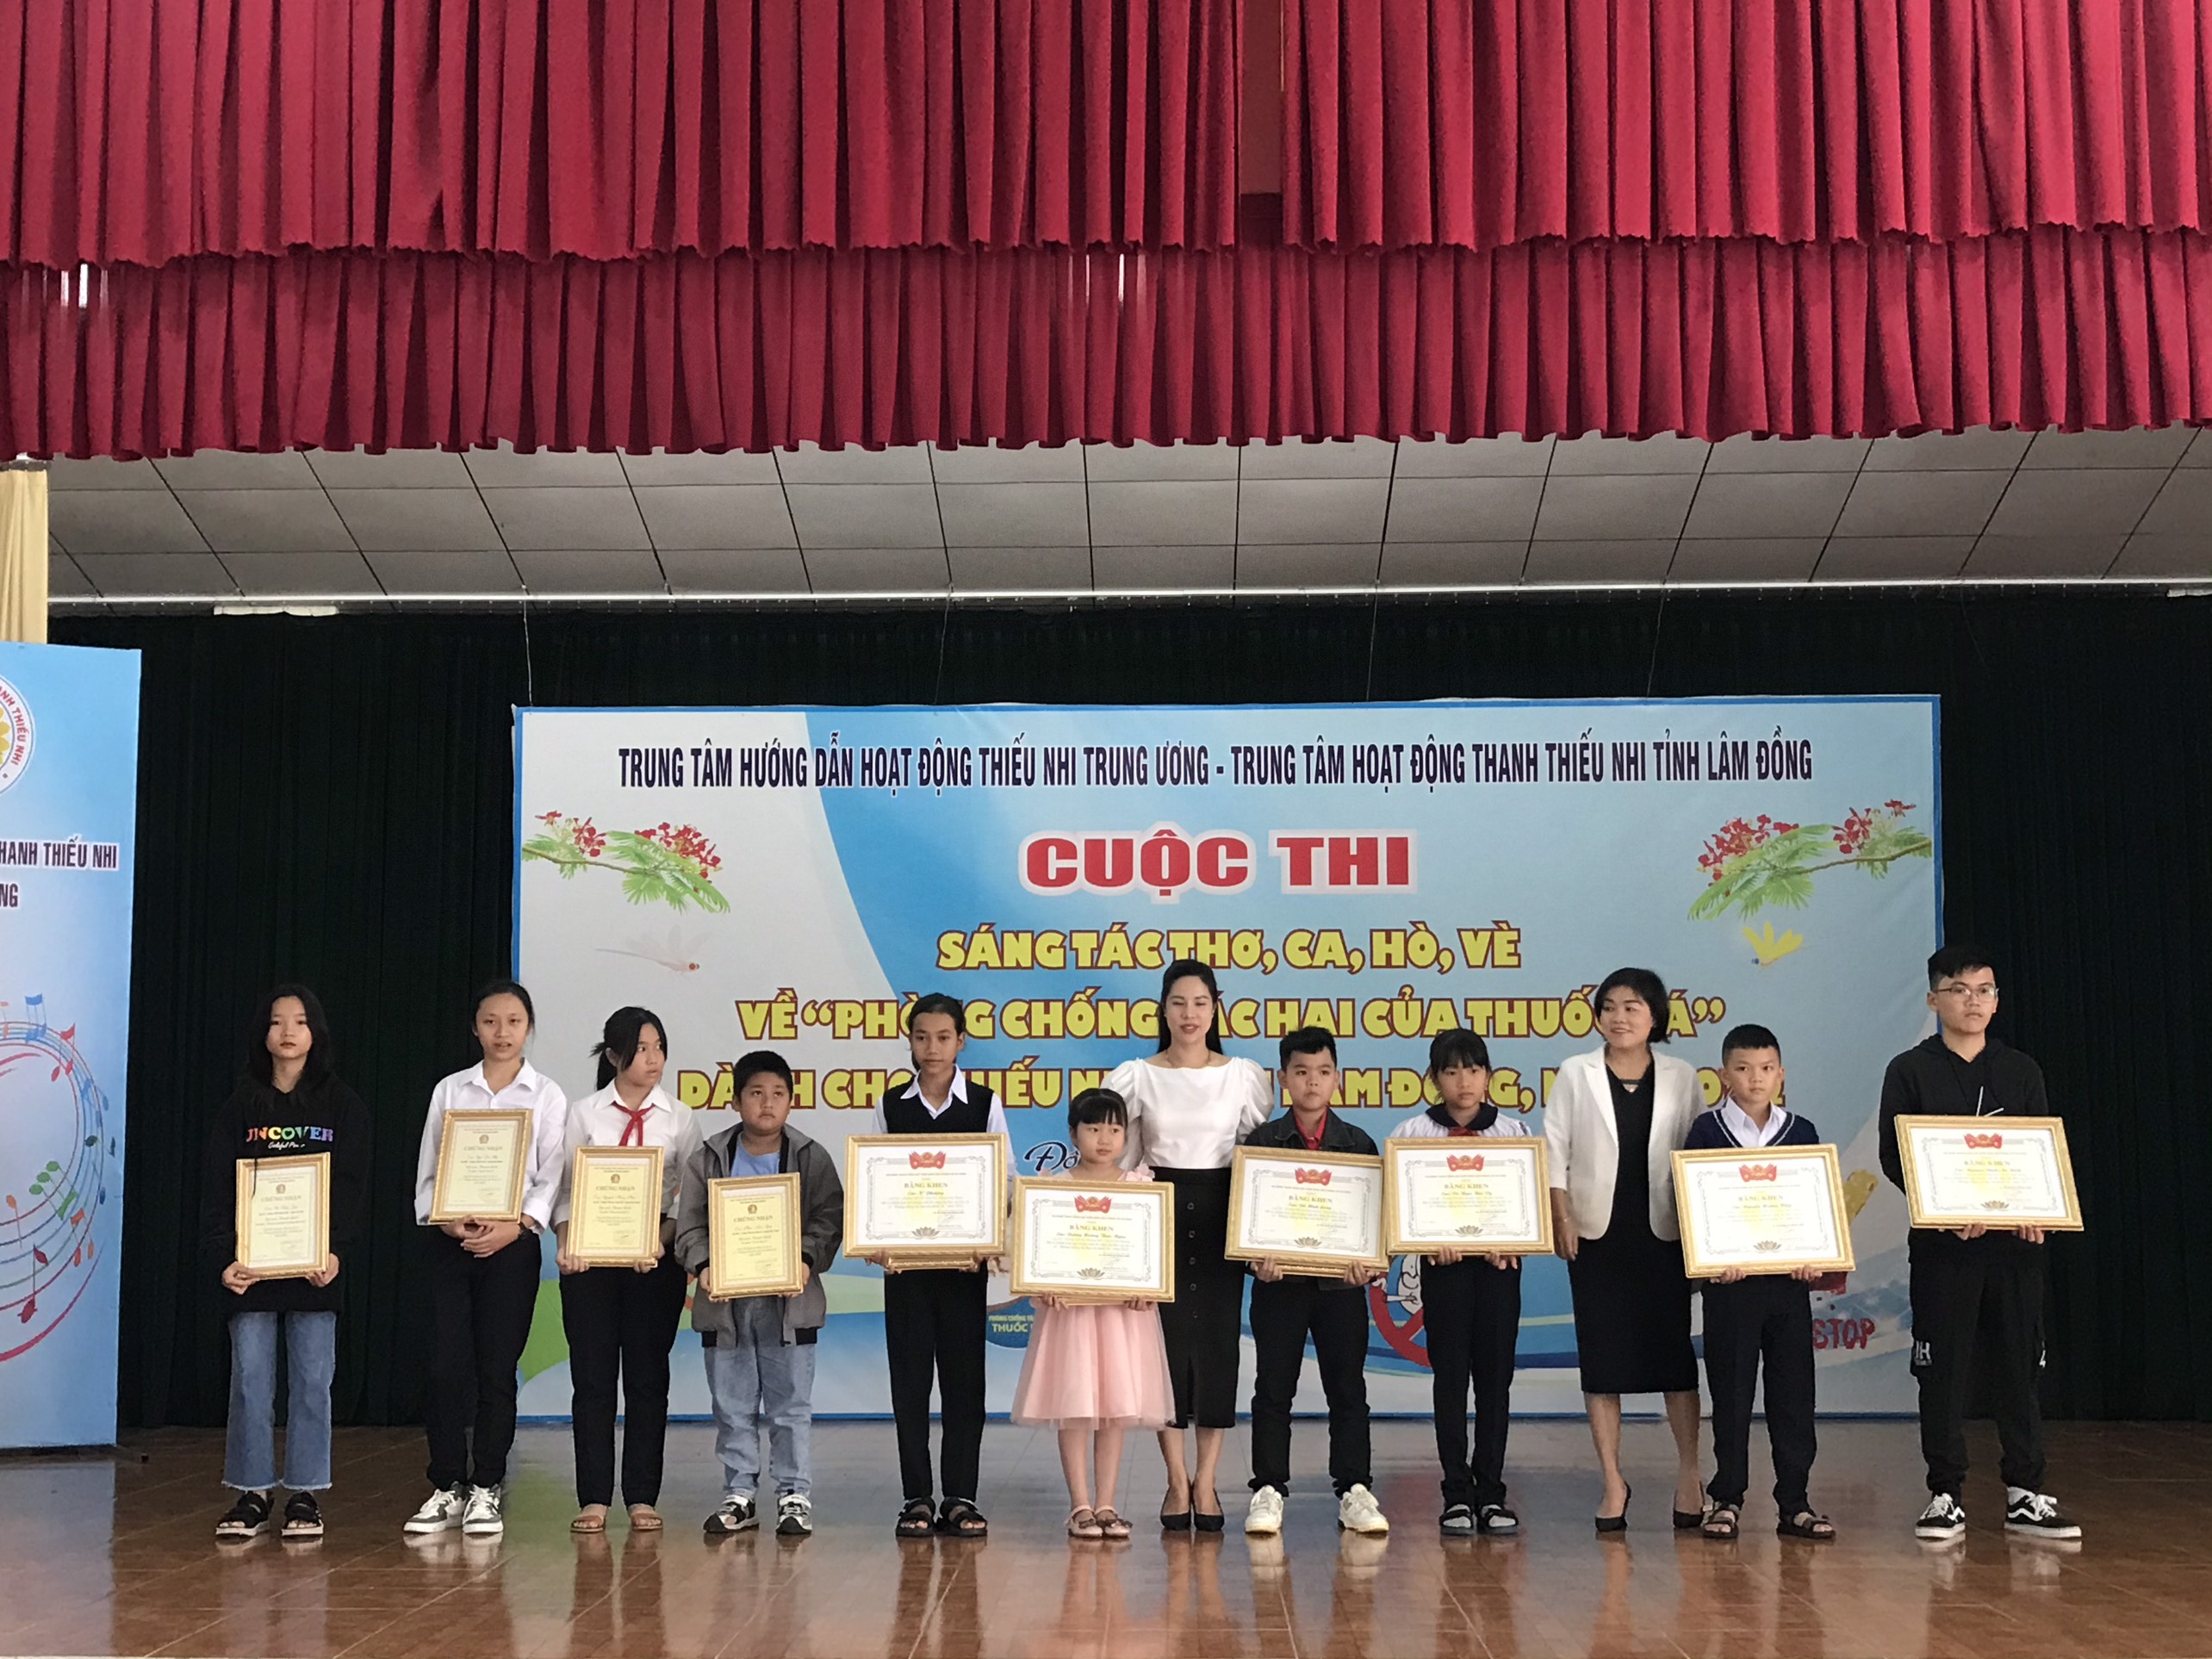 Cuộc thi Sáng tác thơ, ca, hò vè về “ Phòng chống tác hại thuốc lá” dành cho thiếu nhi tại tỉnh Lâm Đồng, năm 2022.